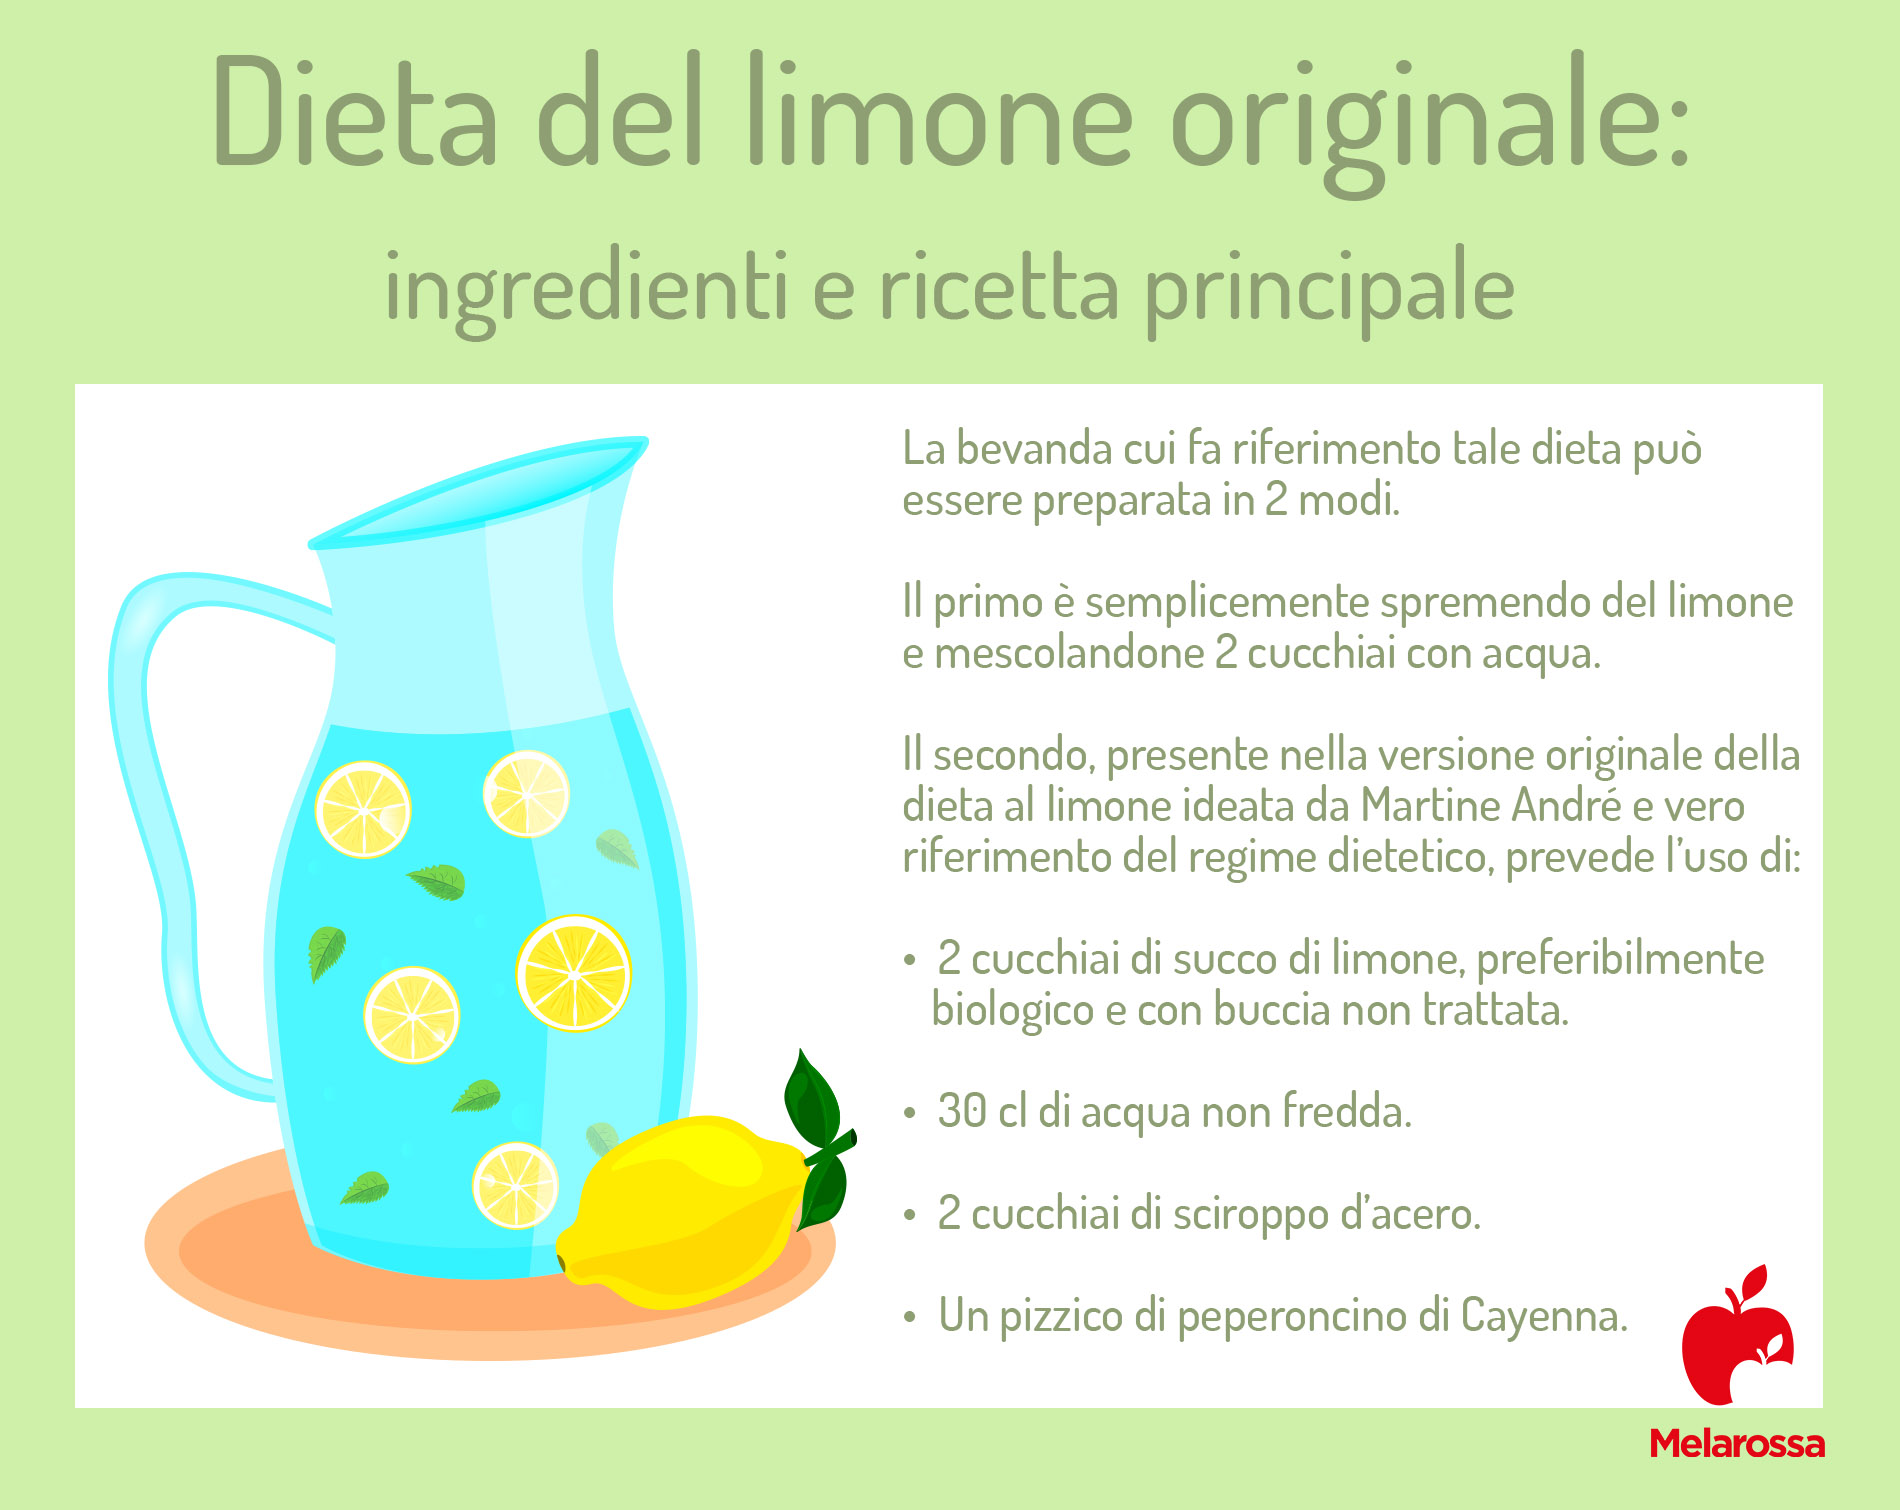 dieta del limone: ingredienti e ricette principale